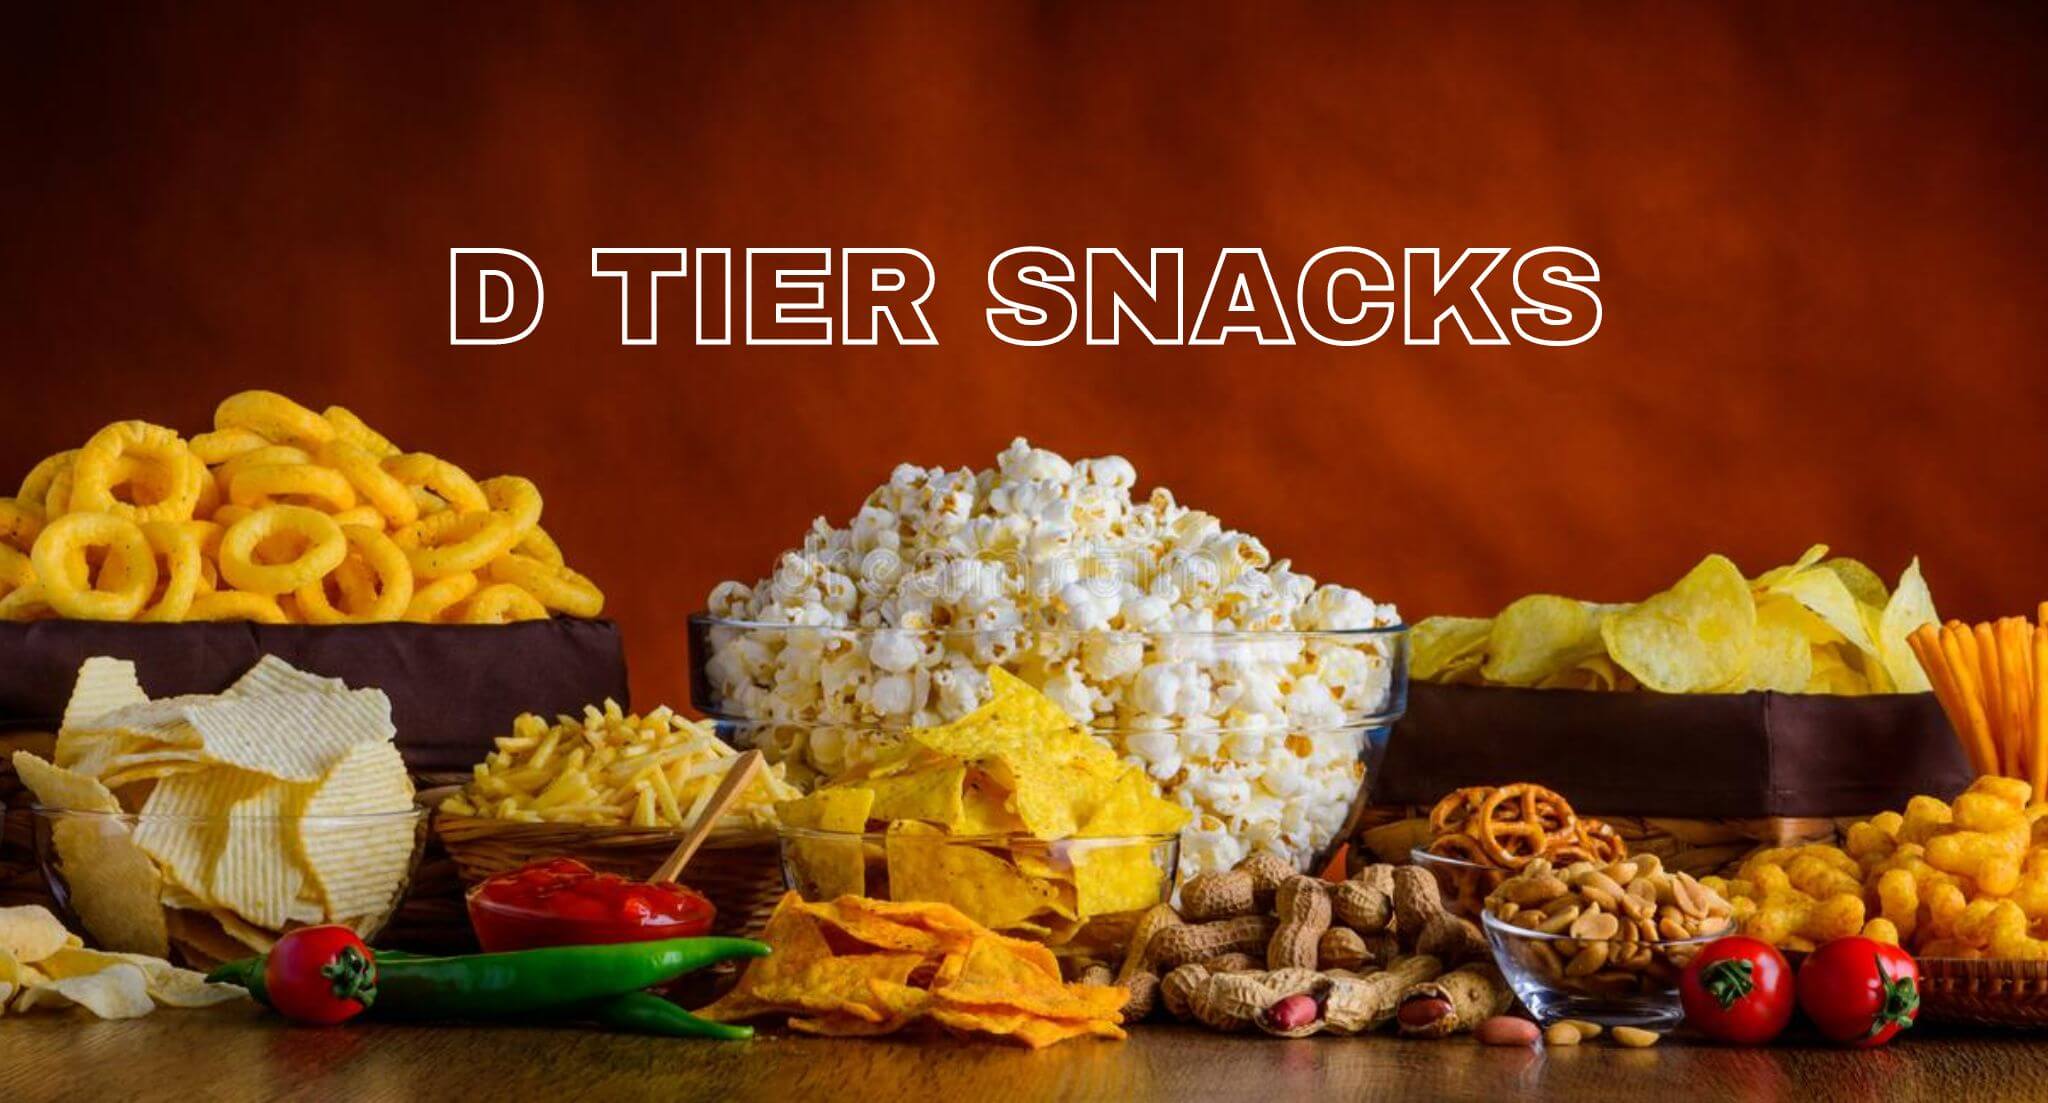 D-tier of snacks